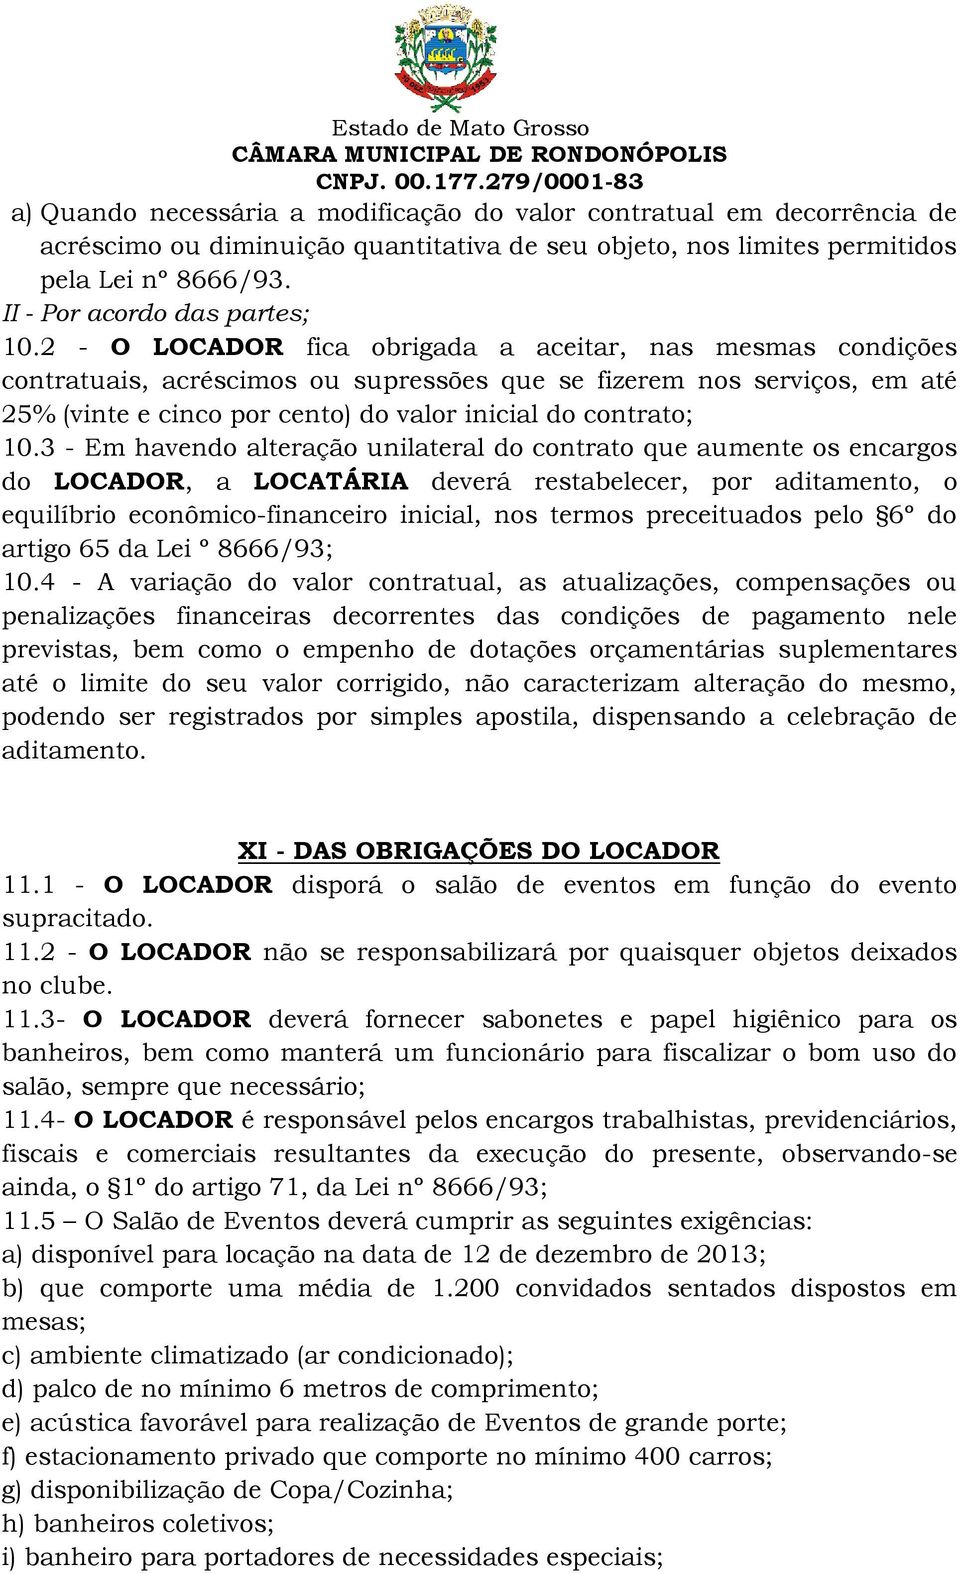 3 - Em havendo alteração unilateral do contrato que aumente os encargos do LOCADOR, a LOCATÁRIA deverá restabelecer, por aditamento, o equilíbrio econômico-financeiro inicial, nos termos preceituados